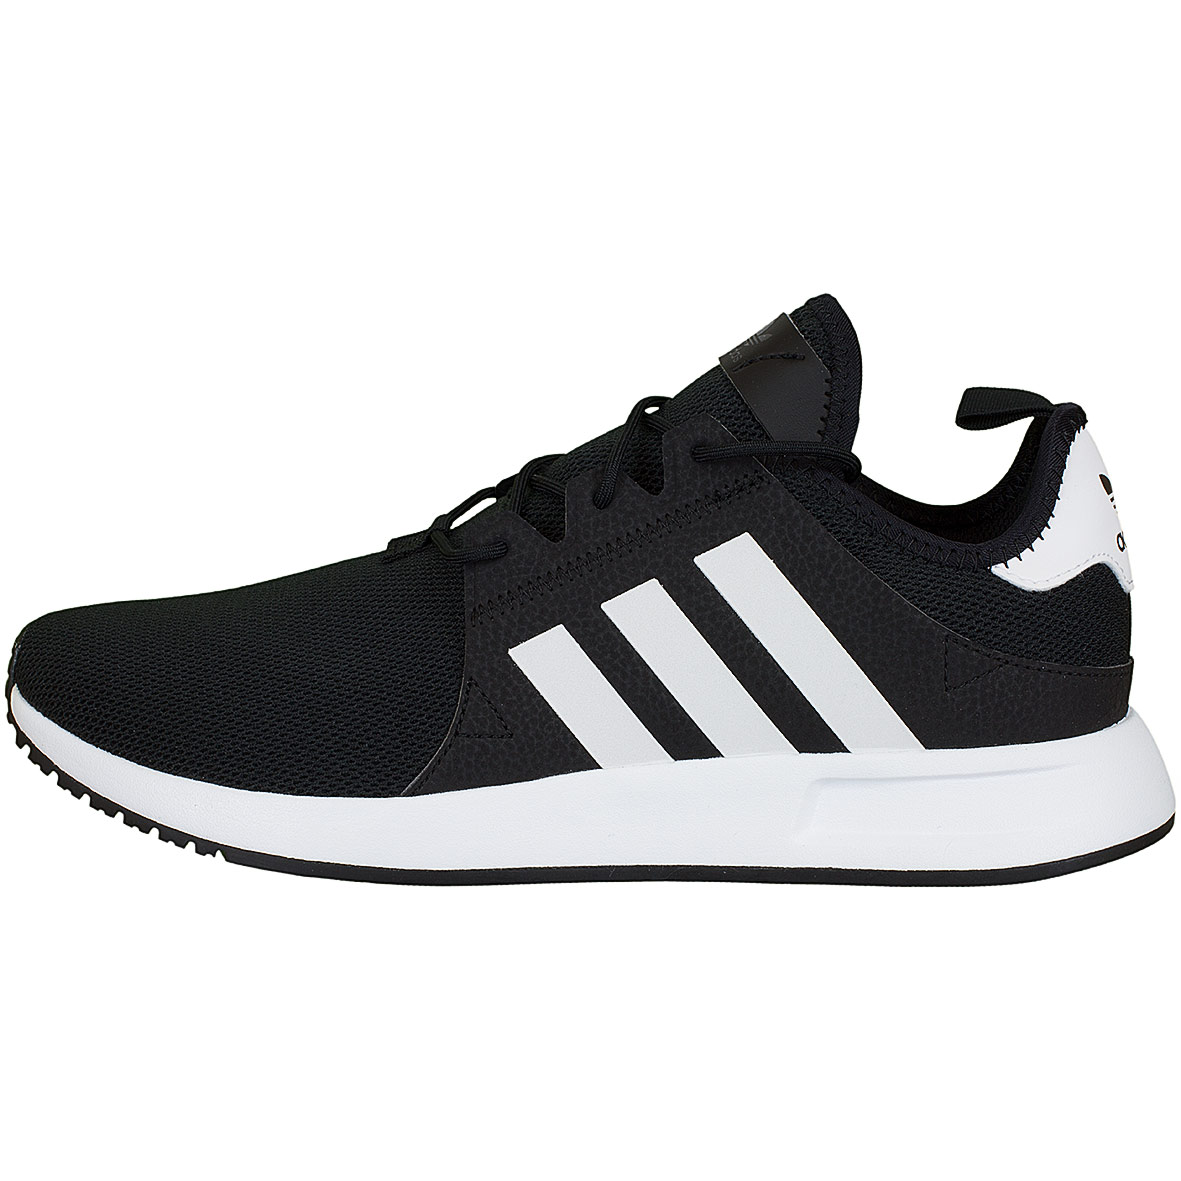 ☆ Adidas Originals Sneaker X PLR schwarz/weiß - hier bestellen!